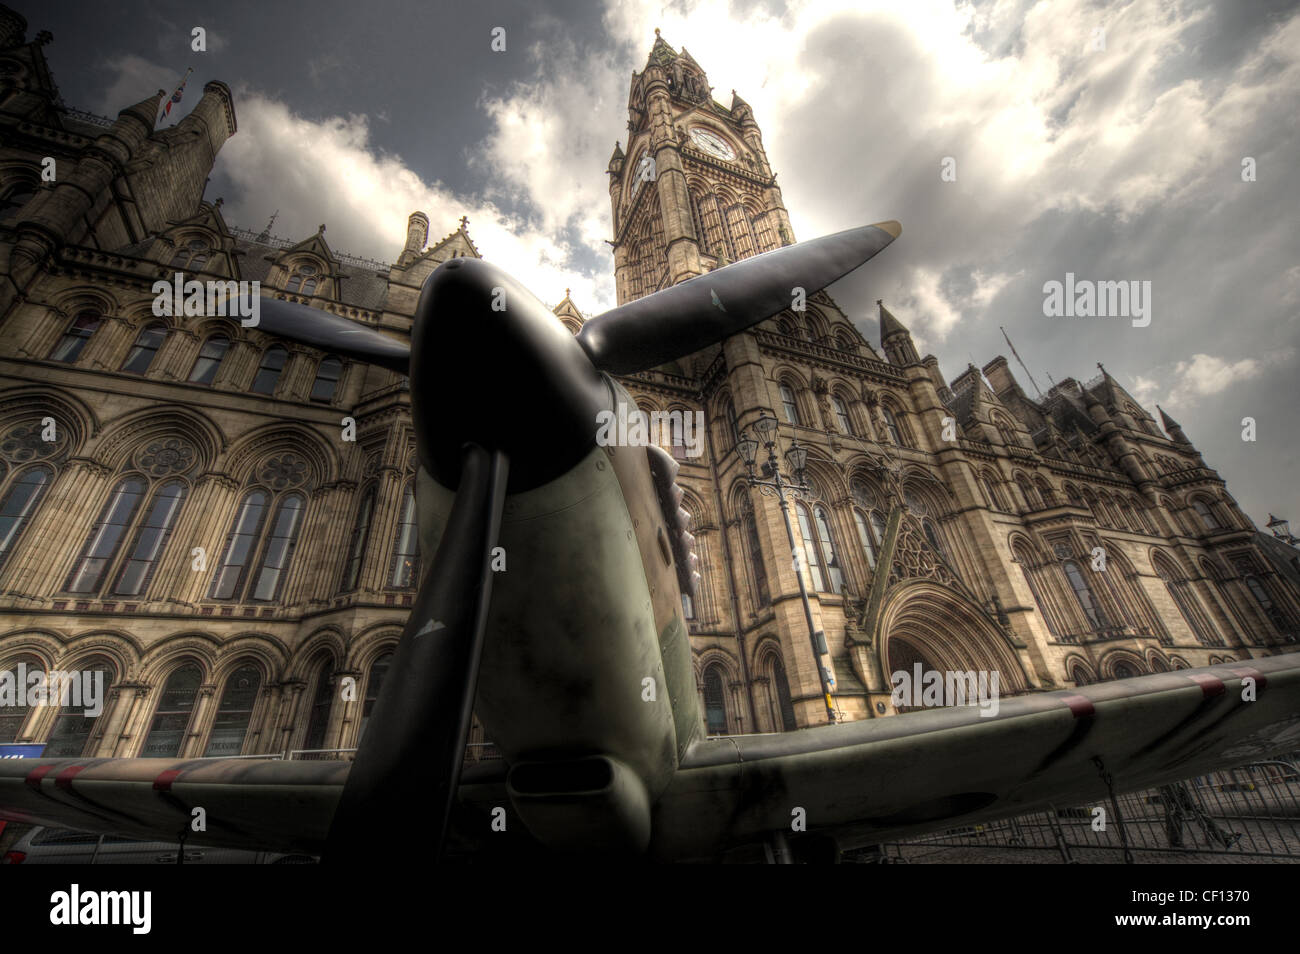 Avion Spitfire en face de l'hôtel de ville de Manchester, Lancashire, England UK Banque D'Images